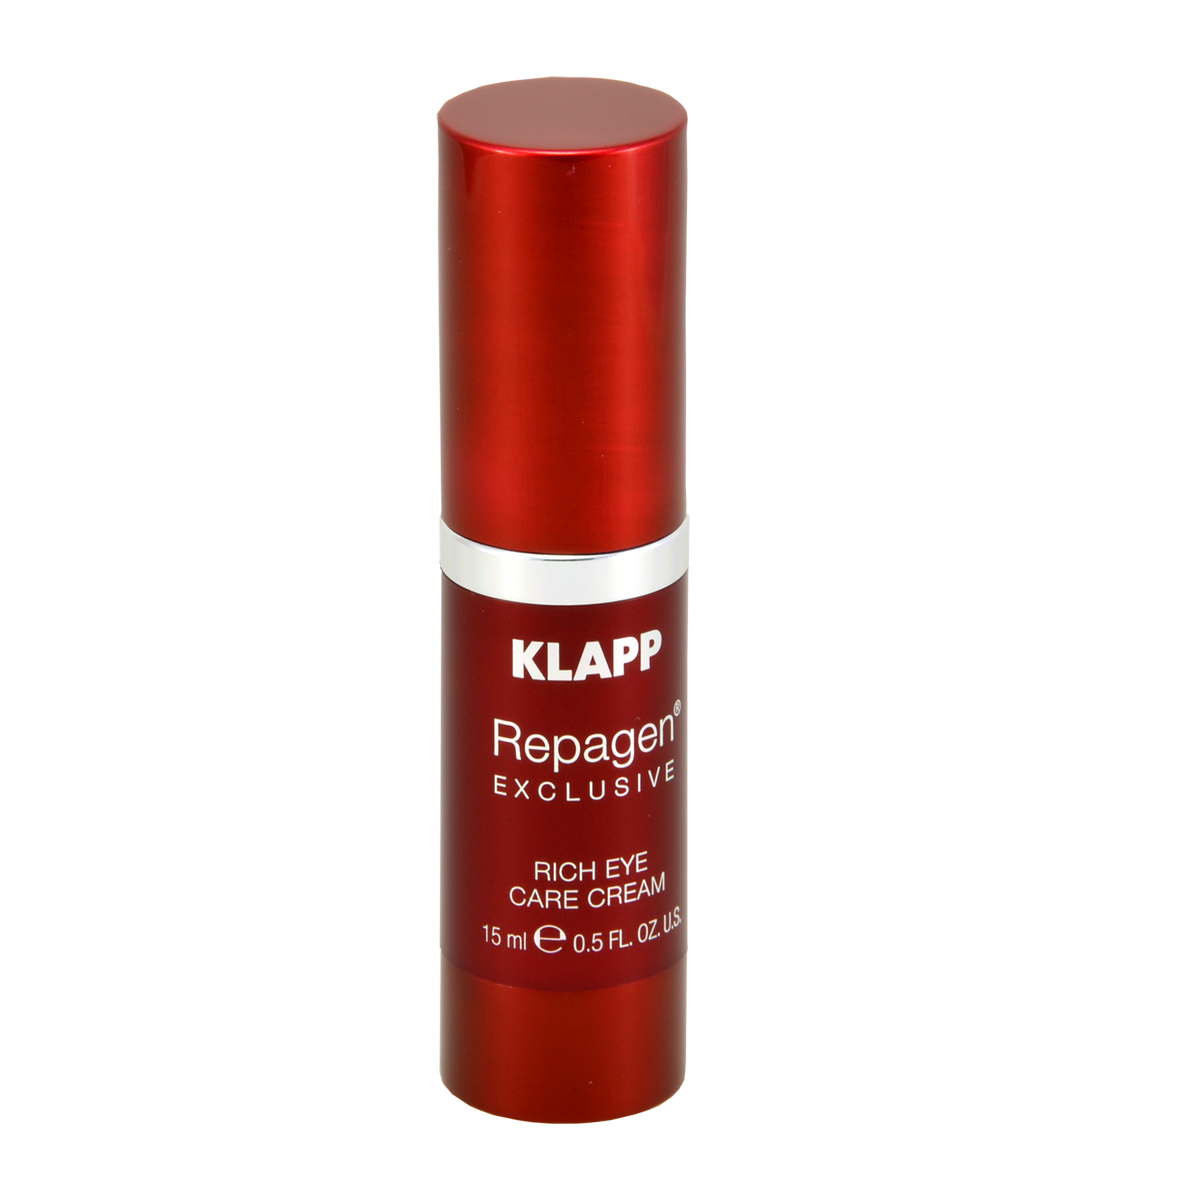 KLAPP Repagen Exclusive Rich Eye Care Cream 15 ml